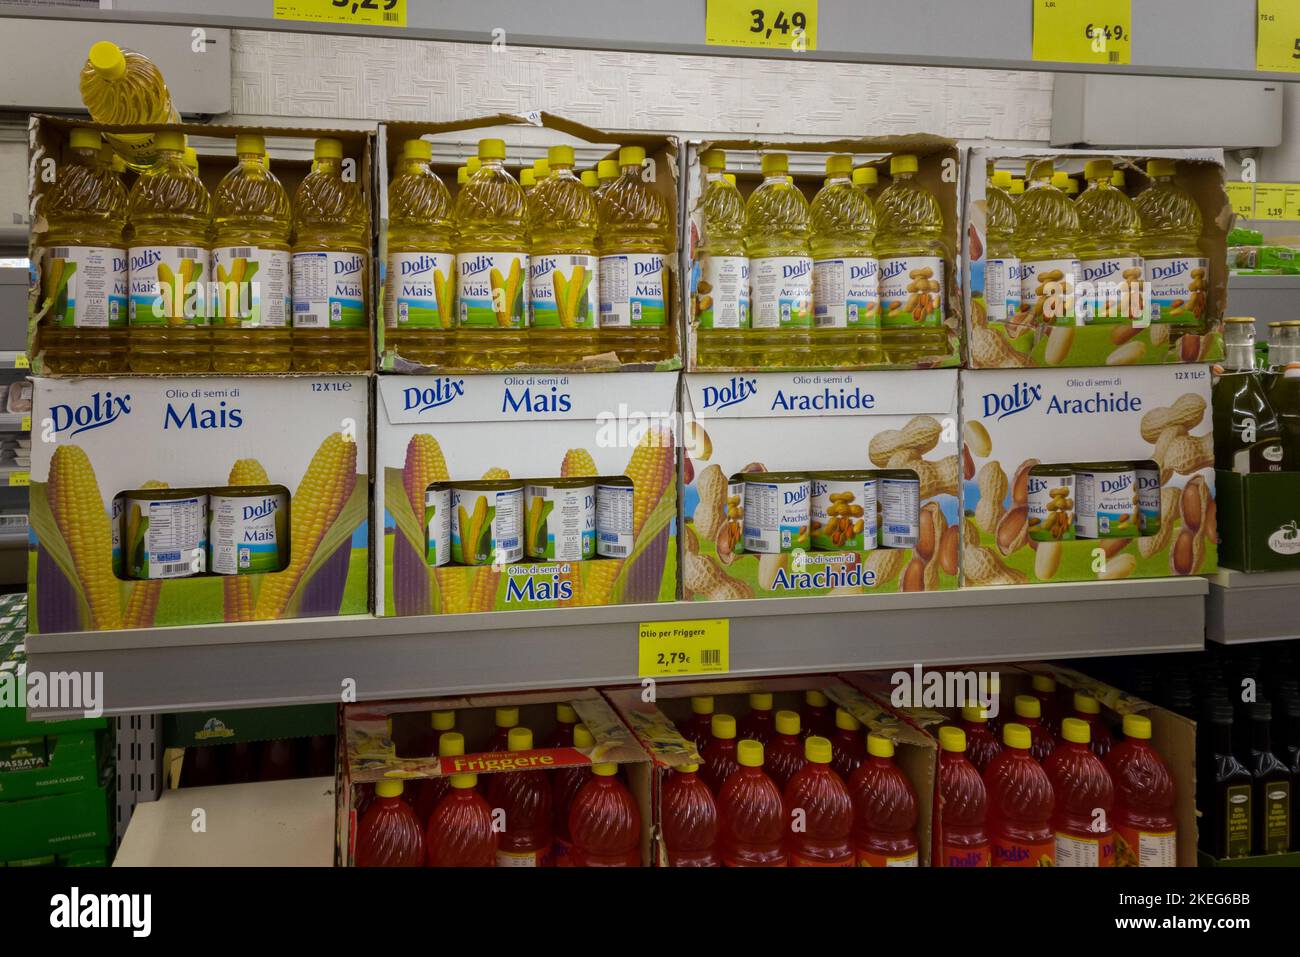 Turin, Italie - 11 novembre 2022: Bouteilles d'huile d'arachide et de maïs sur le plateau de magasin à prix réduit italien. Tex: olio per friggere (huile pour friture) mais (maïs) Banque D'Images